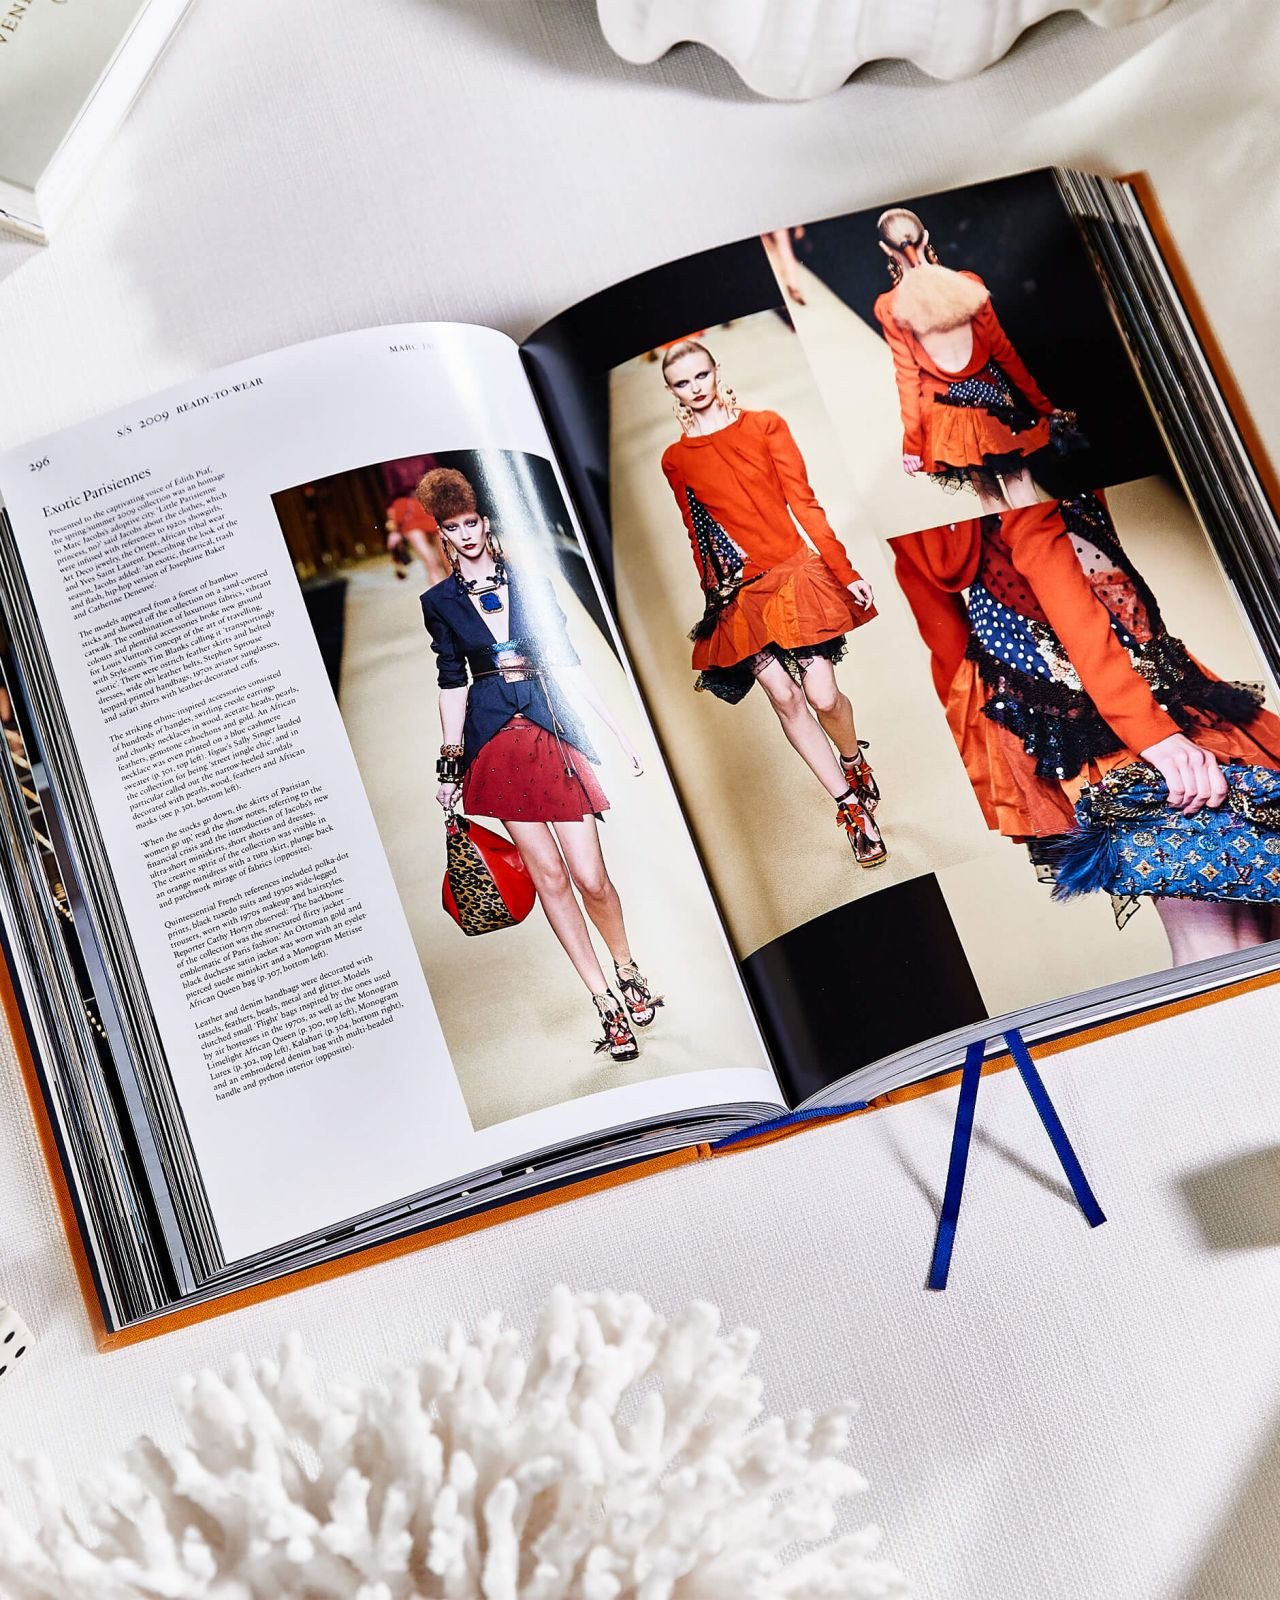 Louis Vuitton: The Complete Fashion Collections (Catwalk): Ellison